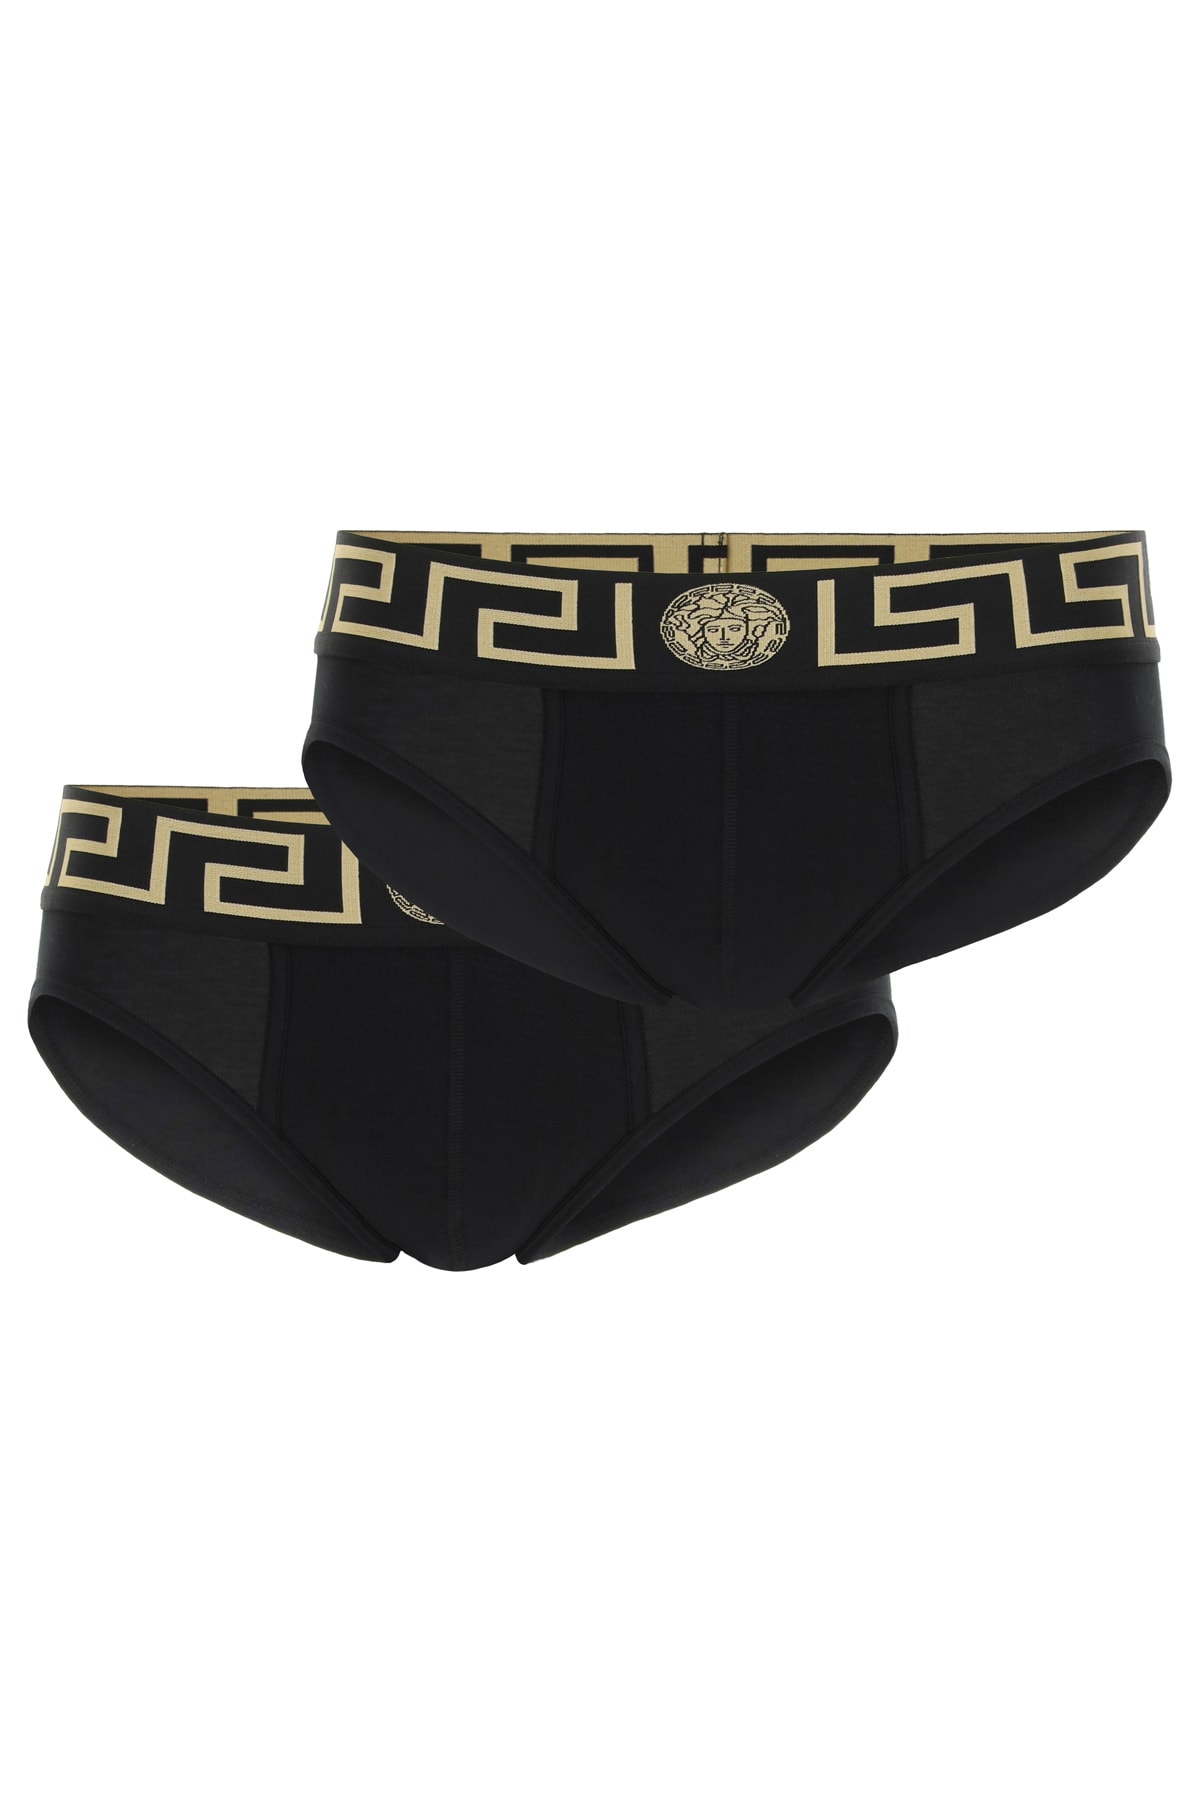 Versace Bi-pack Underwear Greca Border Low Waist Briefs